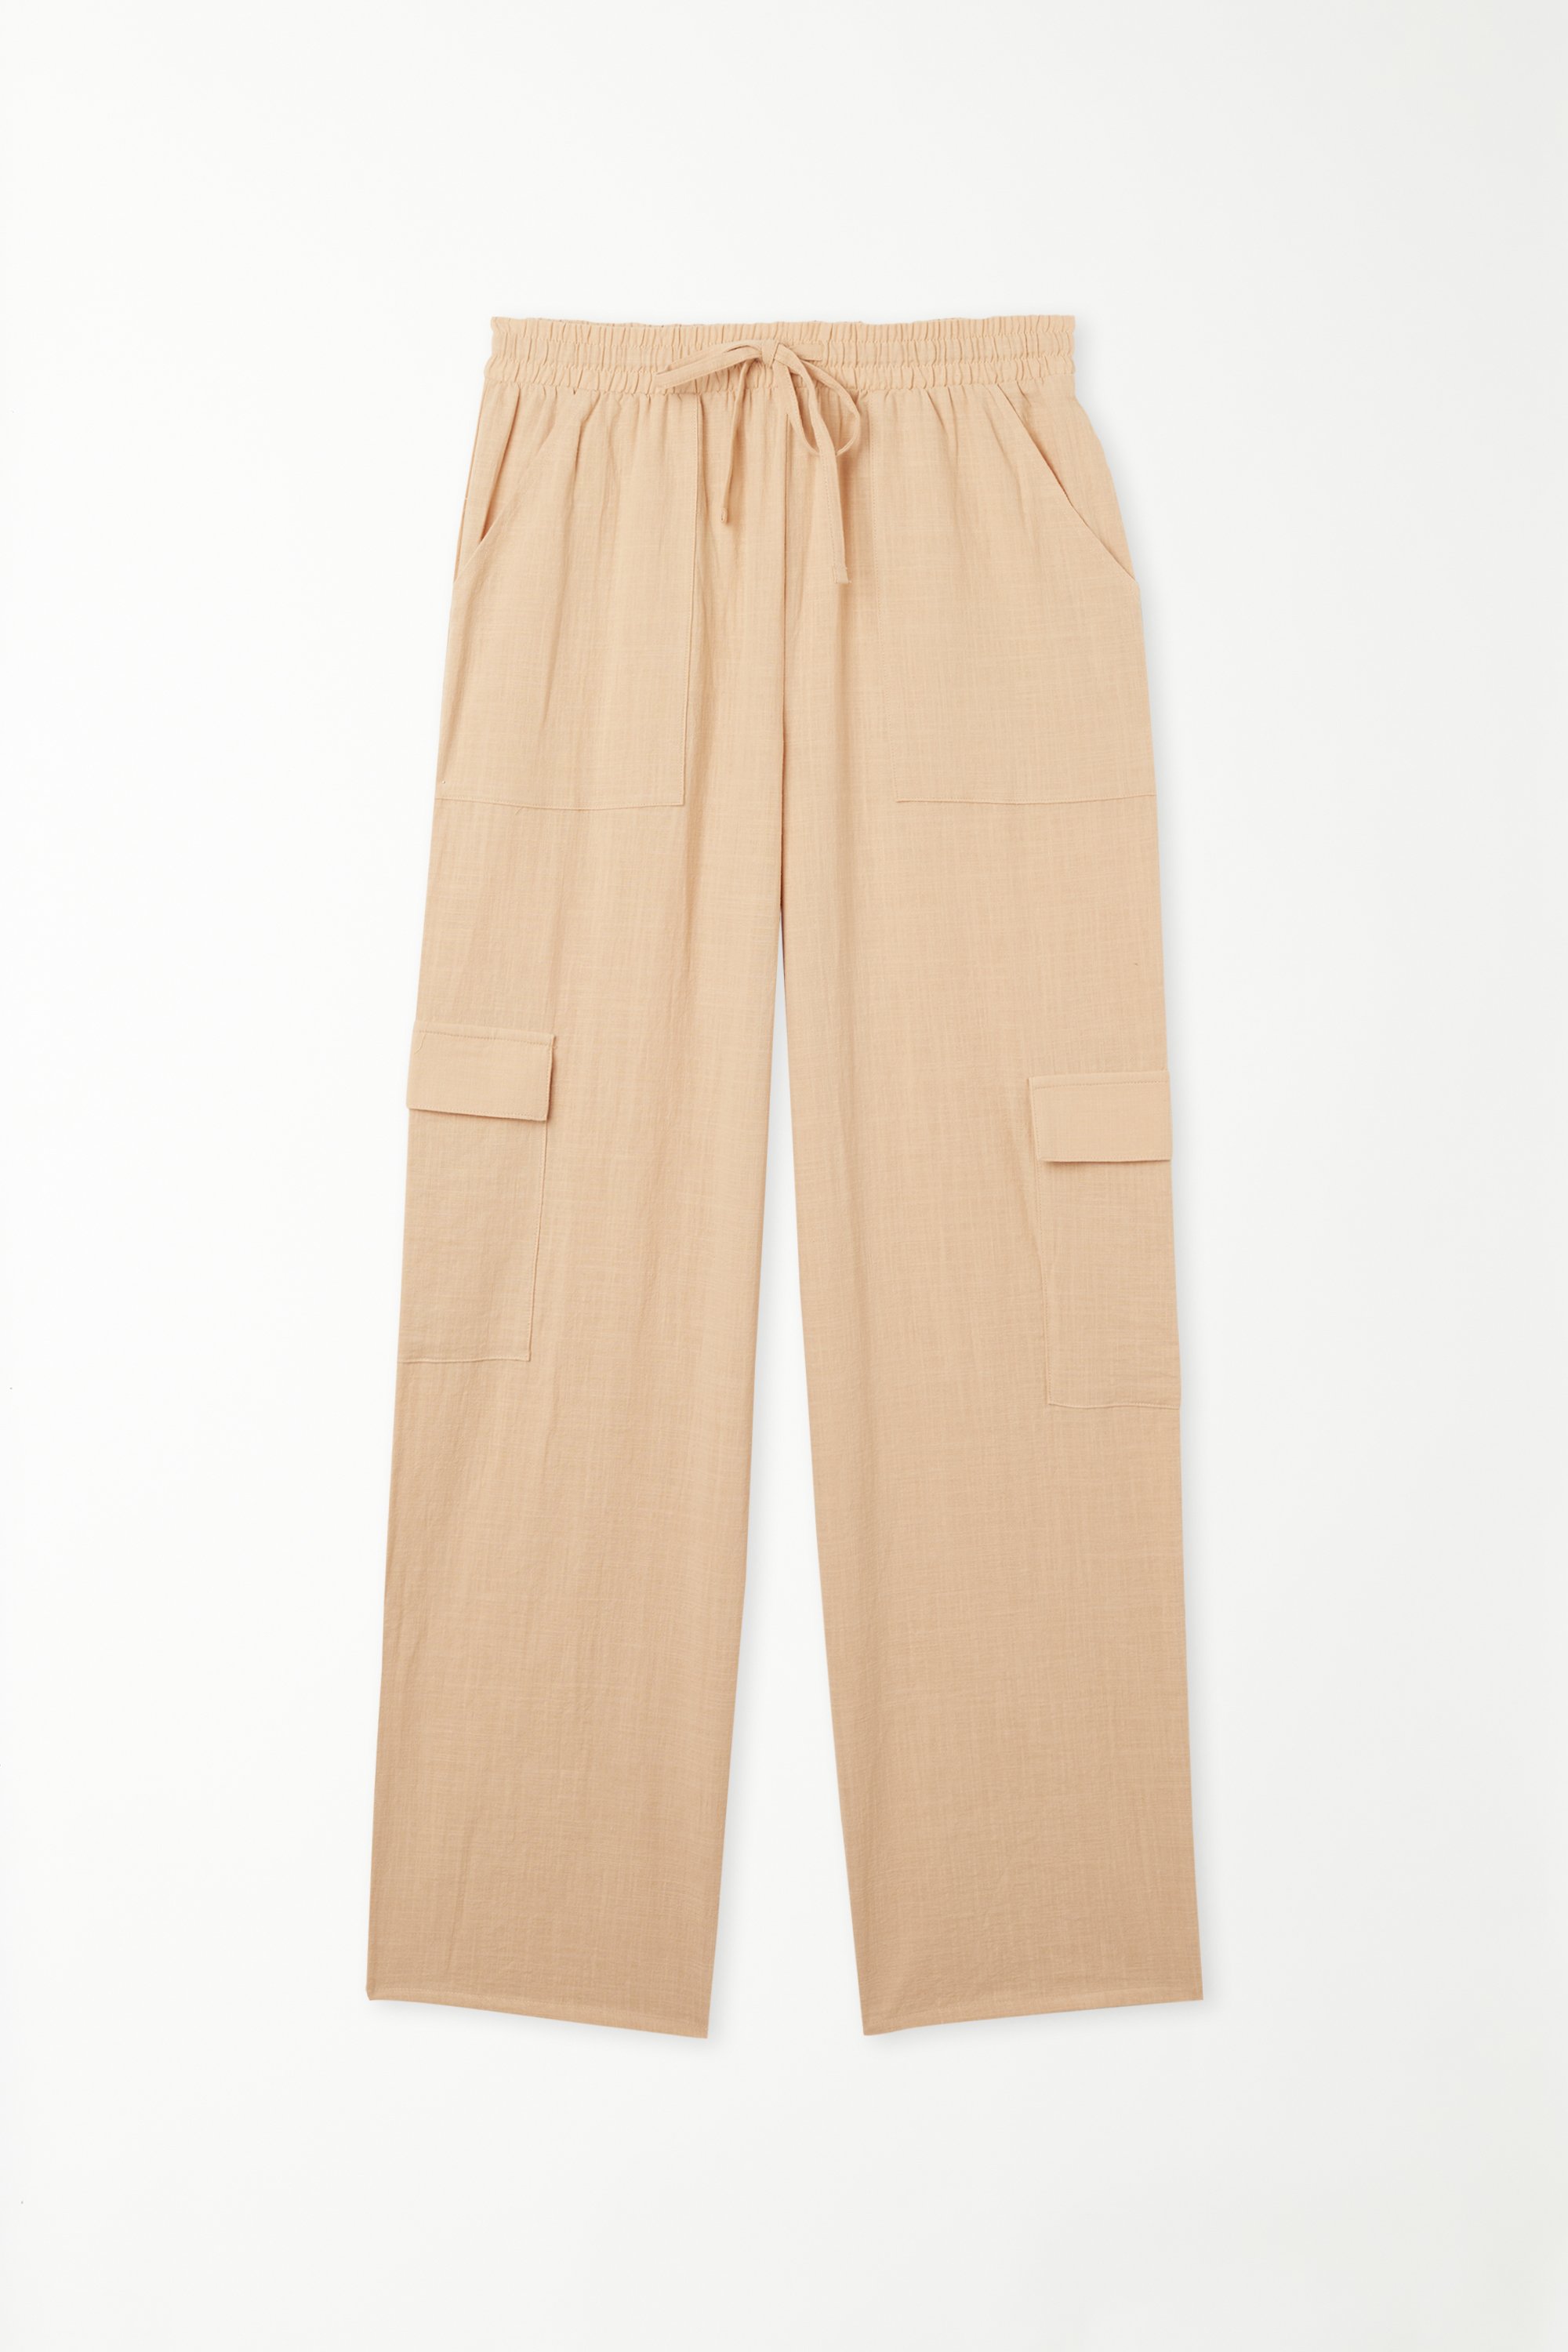 Full Length Pocket Pants in 100% Super Light Cotton